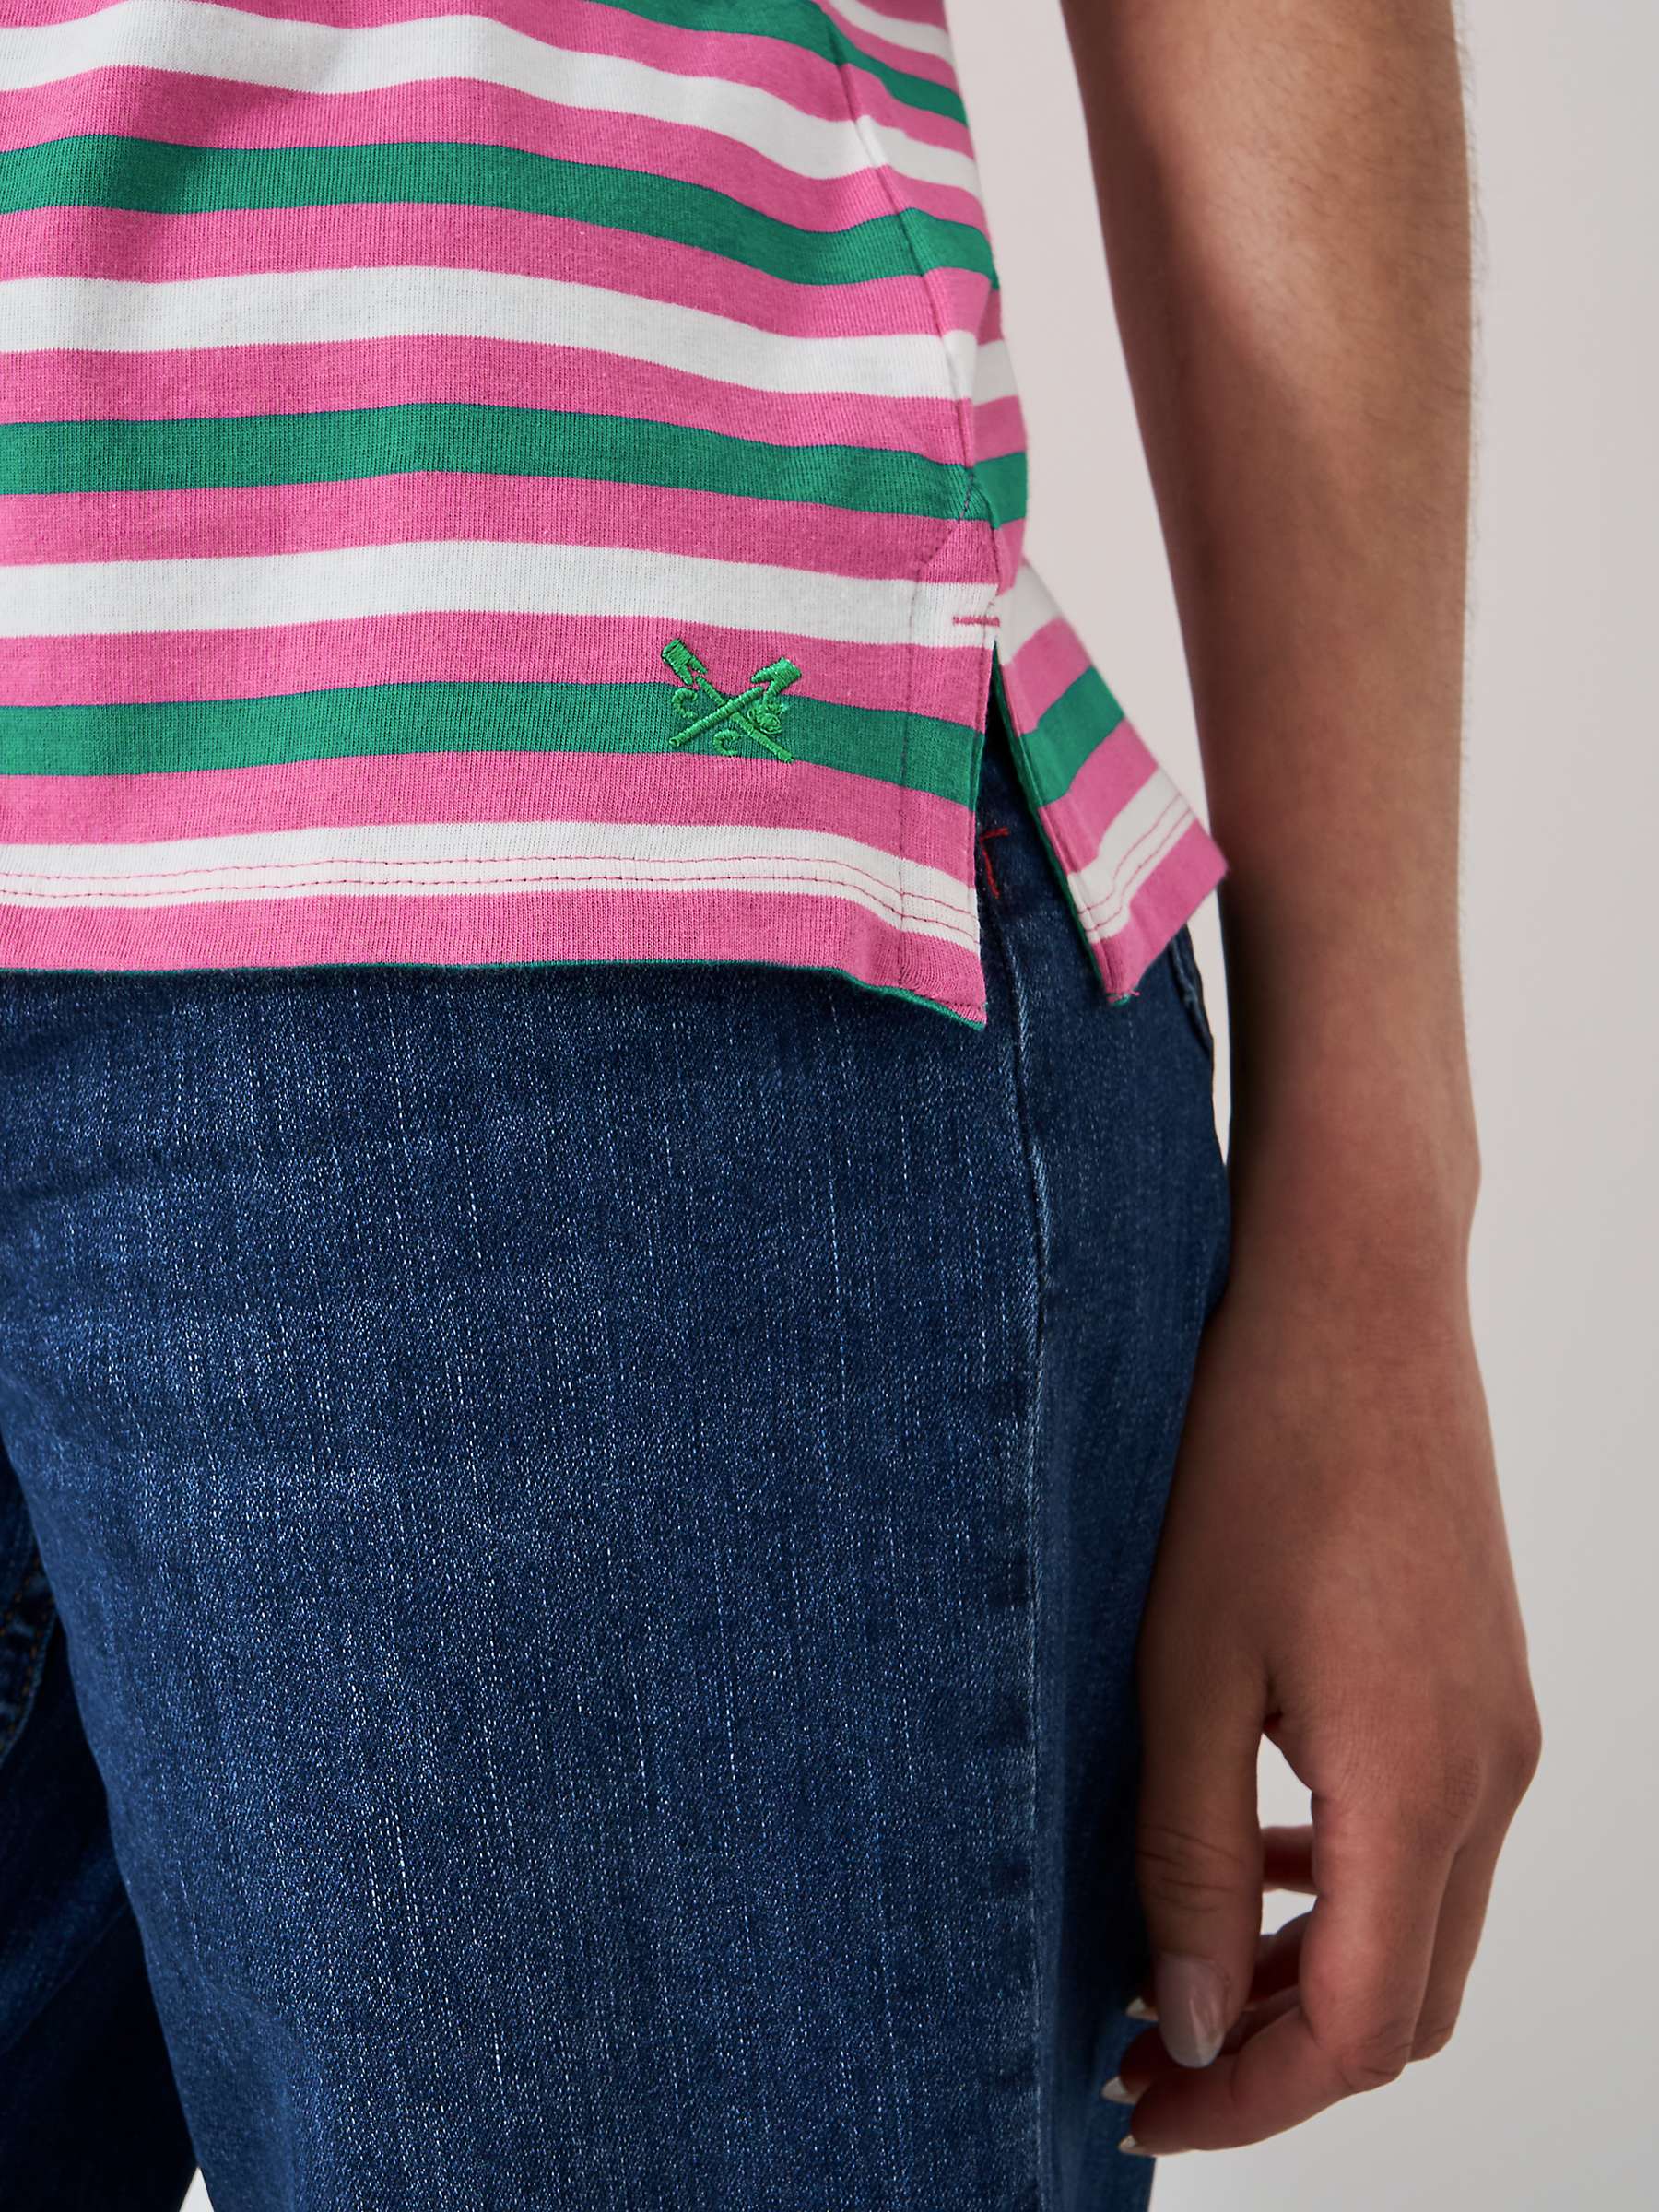 Buy Crew Clothing Breton Stripe T-Shirt, Multi Pink Online at johnlewis.com